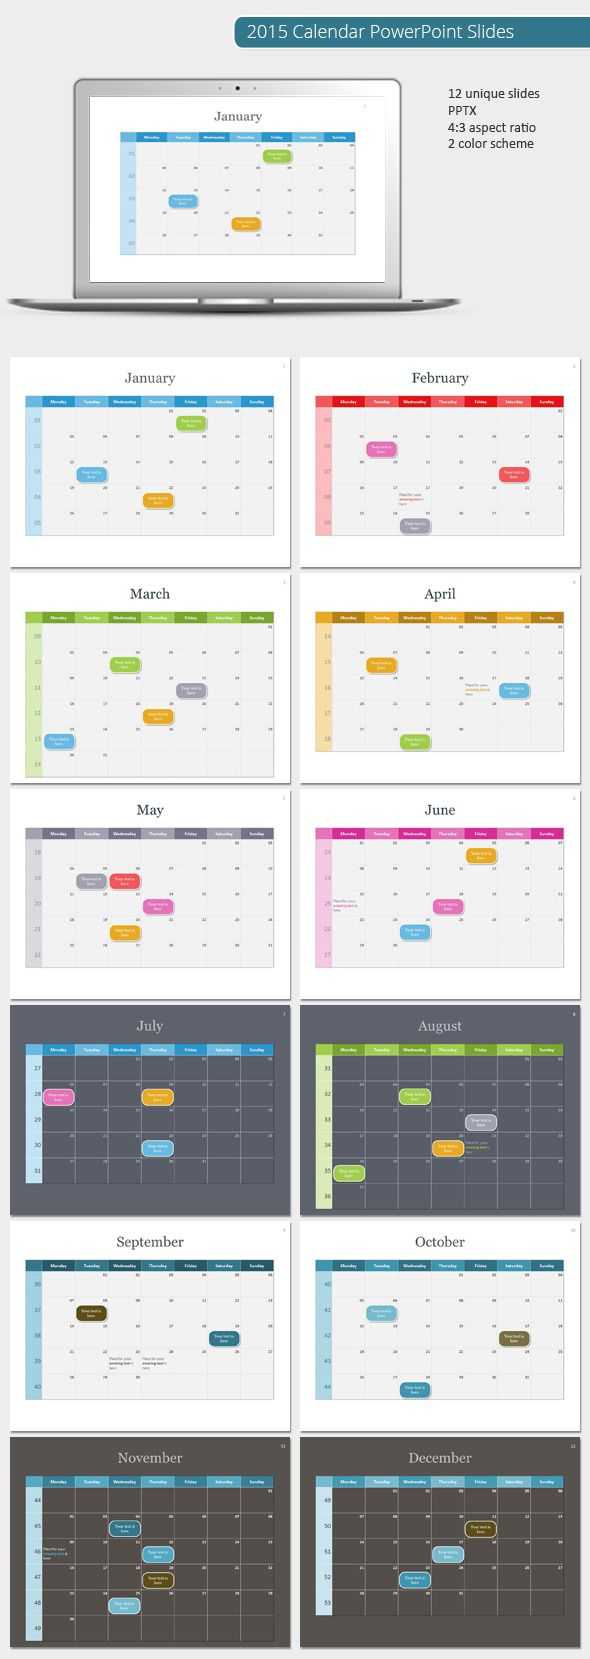 2015 Calendar Powerpoint Template (Powerpoint Templates Intended For Powerpoint Calendar Template 2015